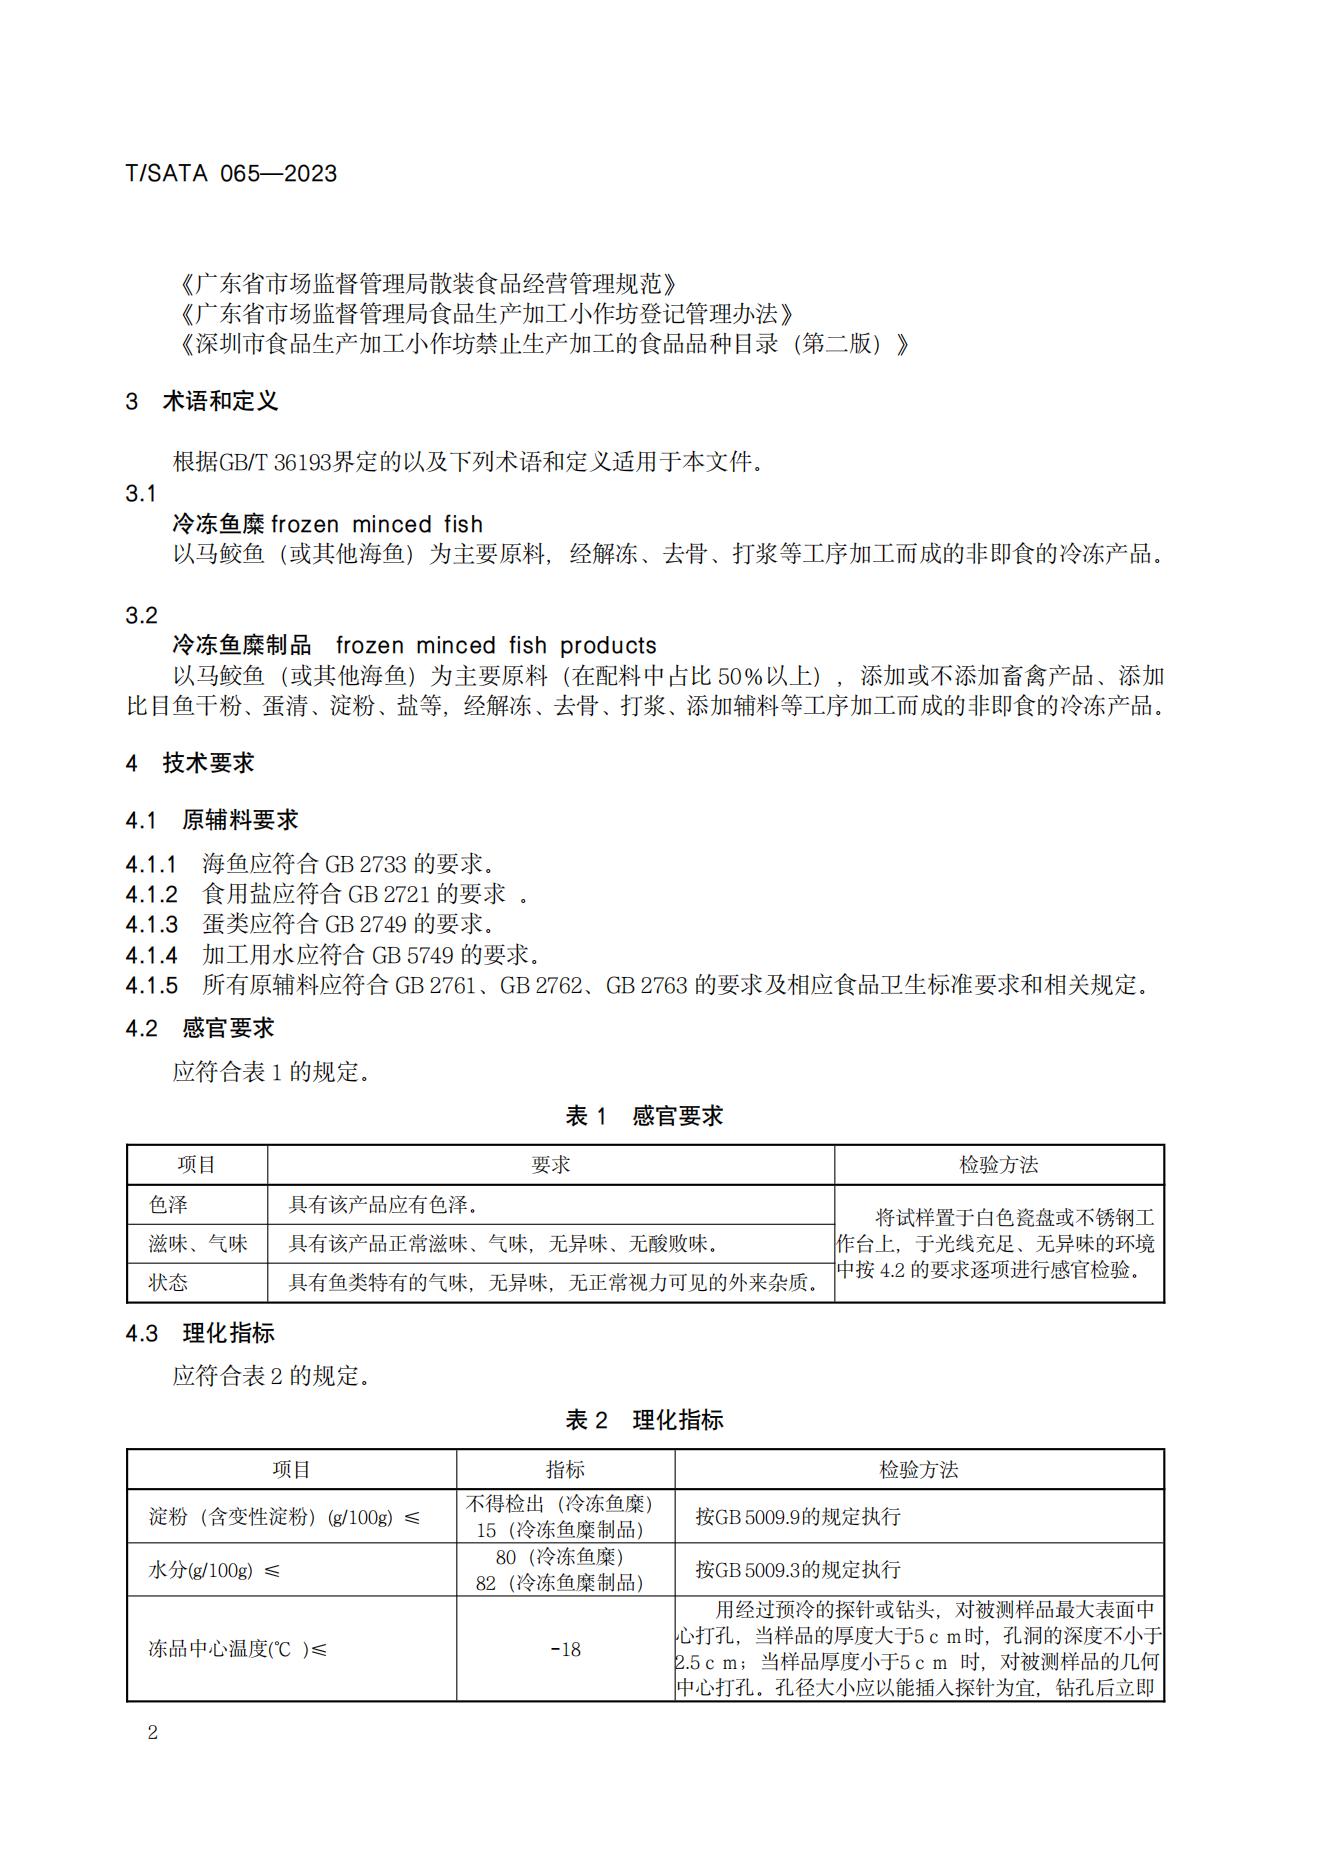 TSATA 065-2023 小作坊食品  冷冻鱼糜及制品_04.jpg